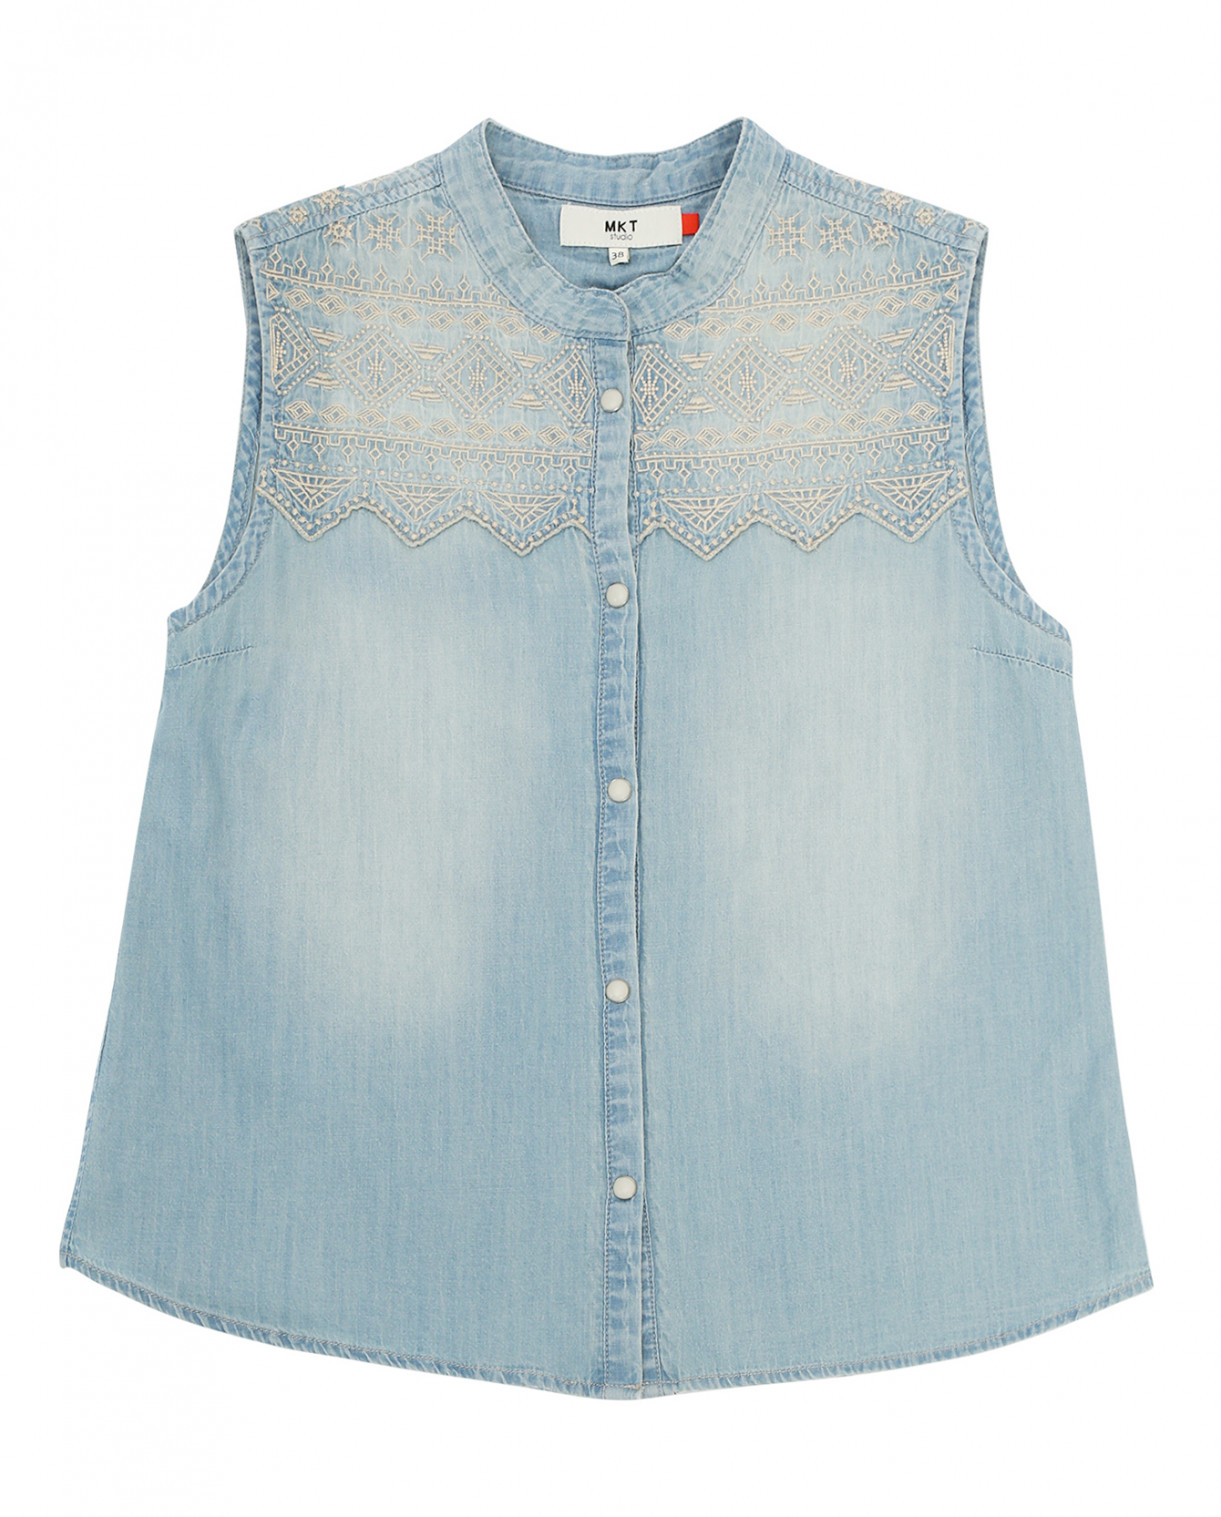 Джинсовая рубашка без рукавов с вышивкой MKT Studio  –  Общий вид  – Цвет:  Синий